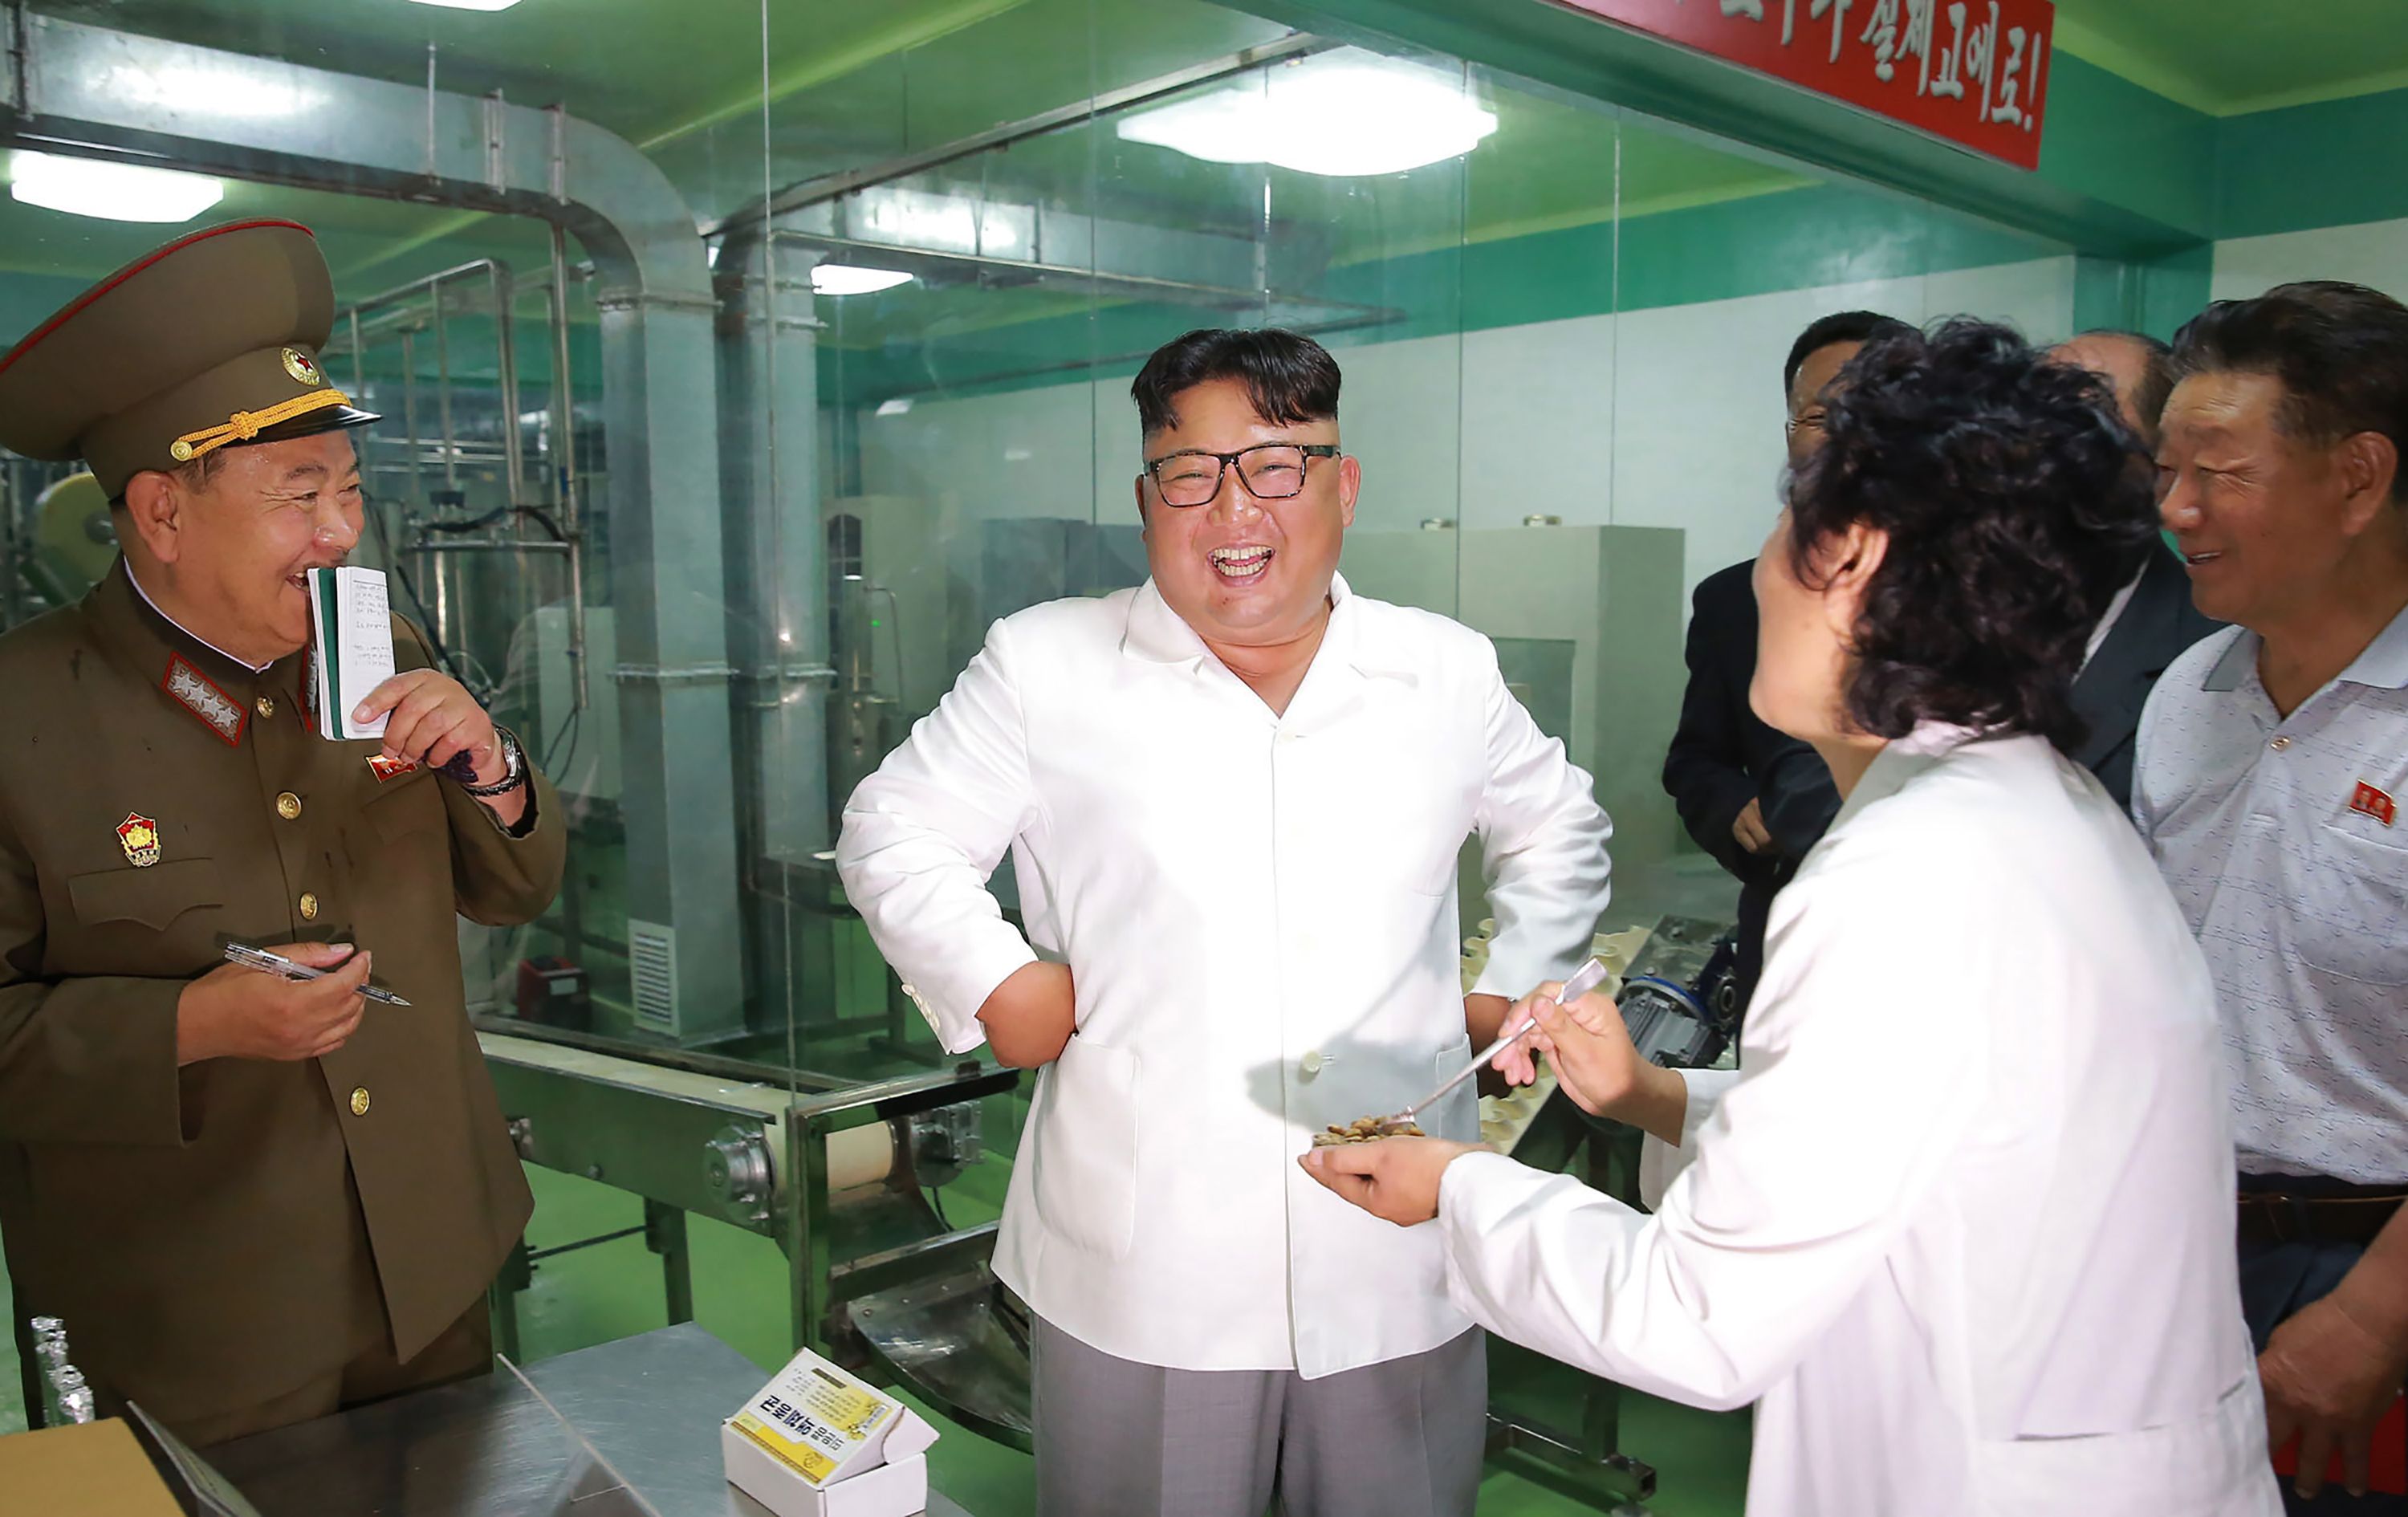 وصول زعيم كوريا الشمالية للمصنع 